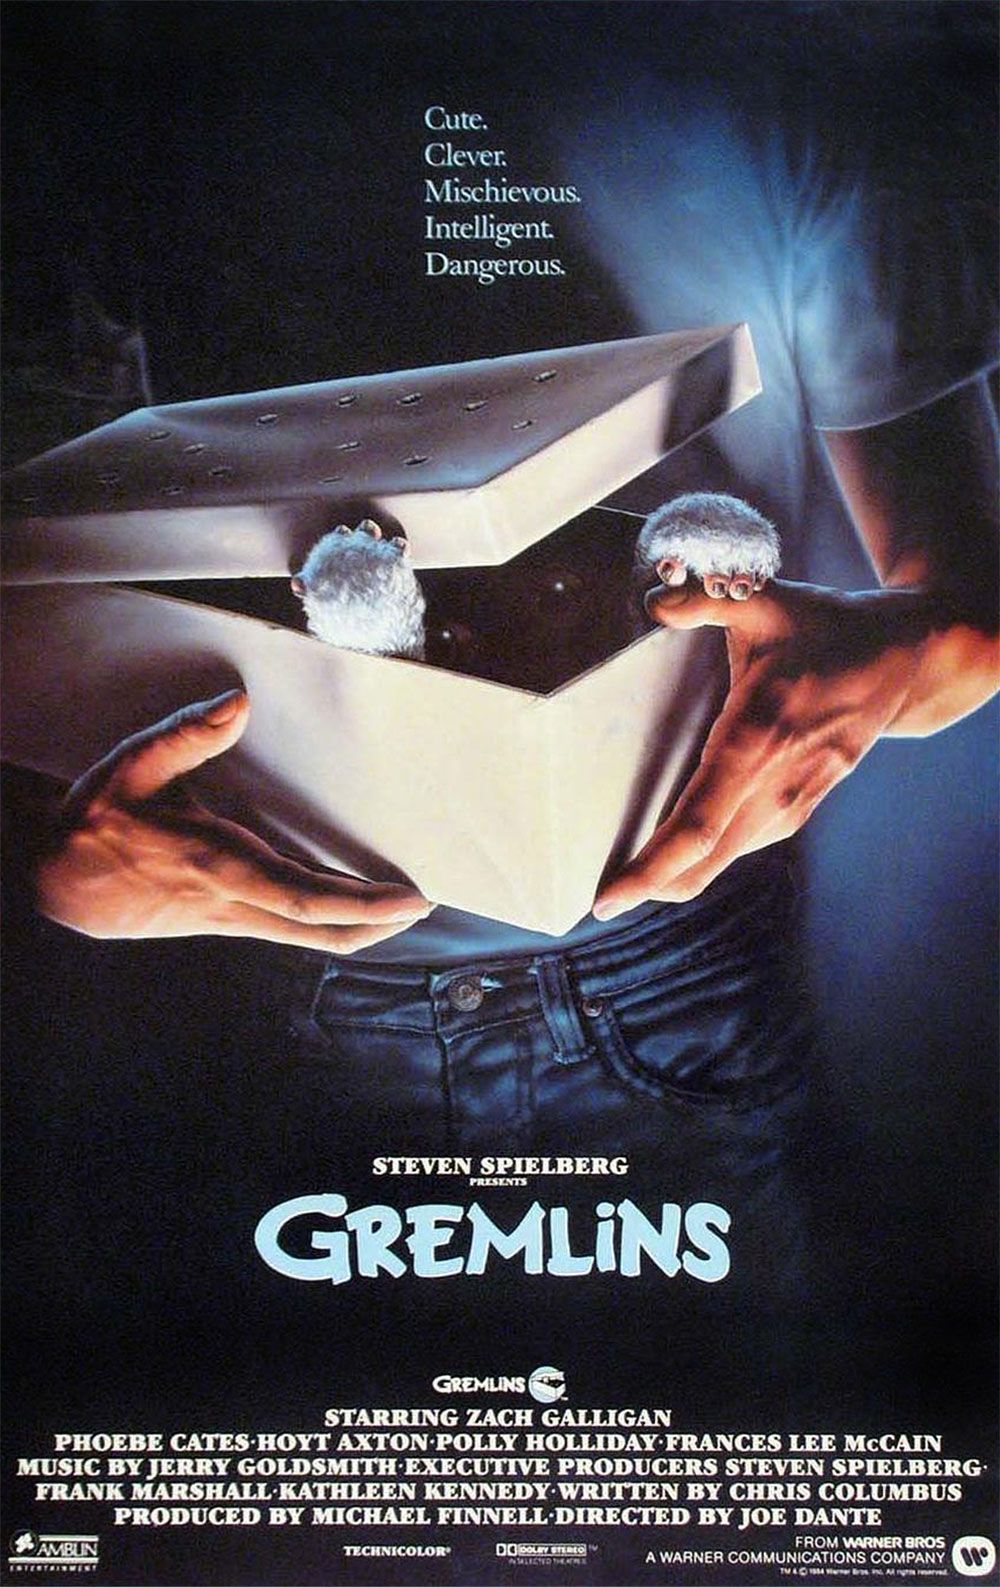 The original 1980s poster for Gremlins